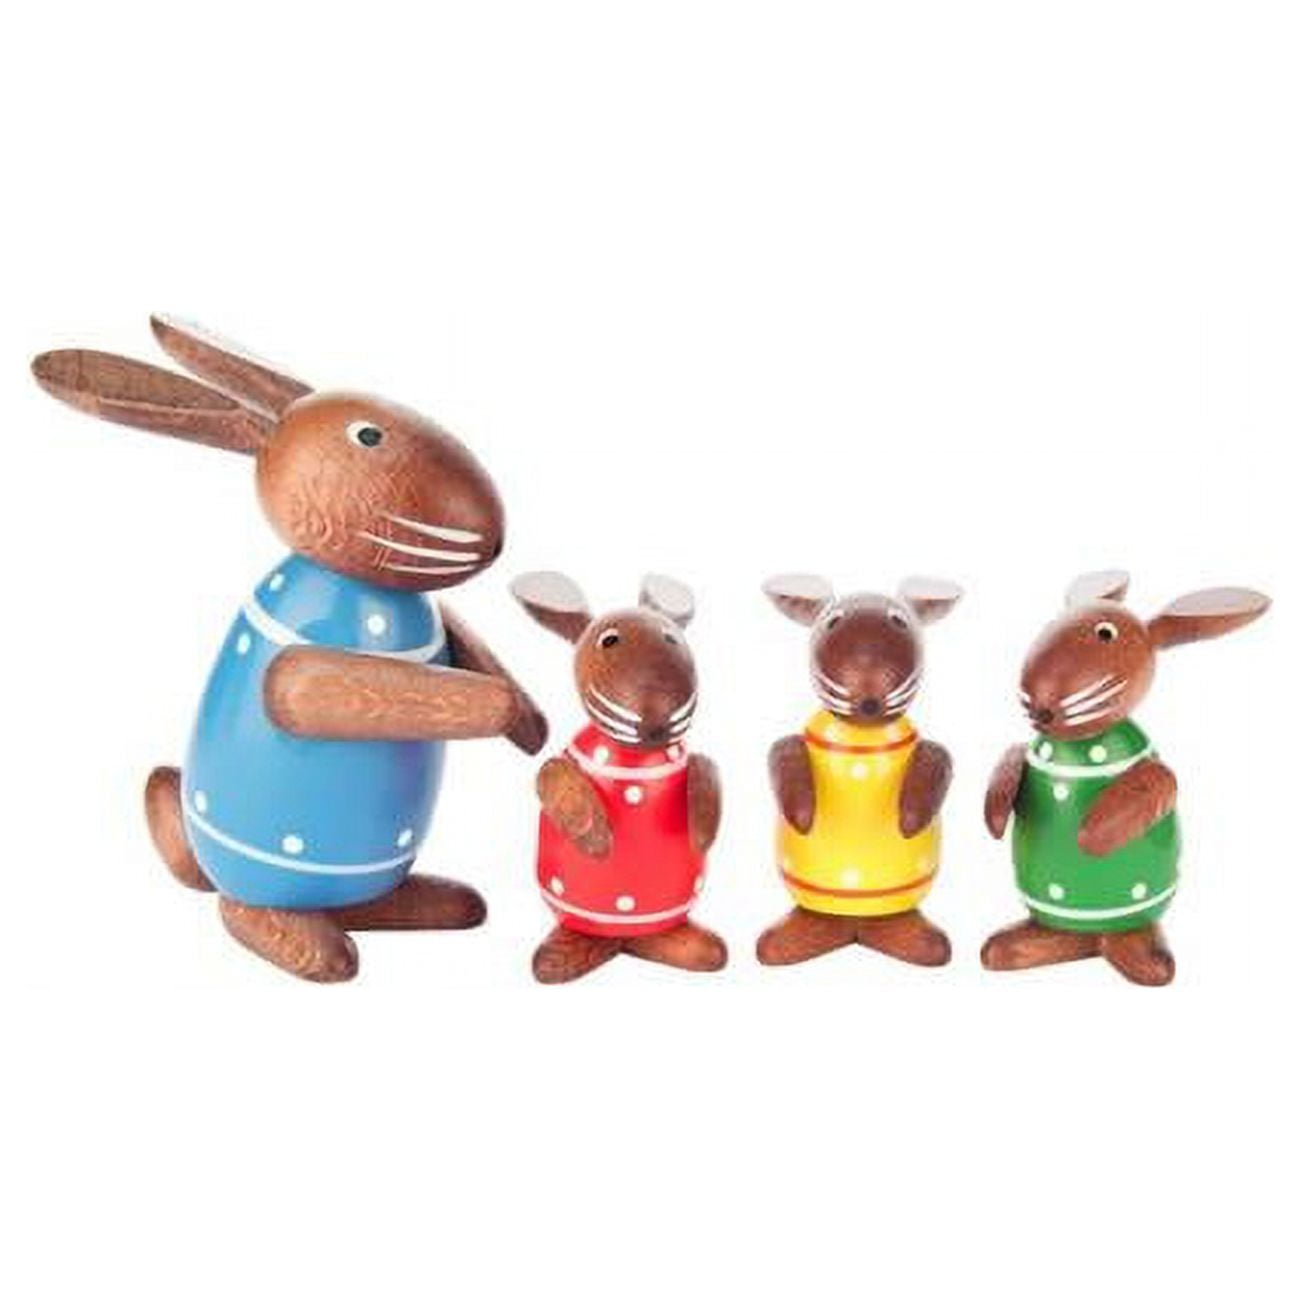 224-703 Dregeno Easter Ornament - Rabbit Family